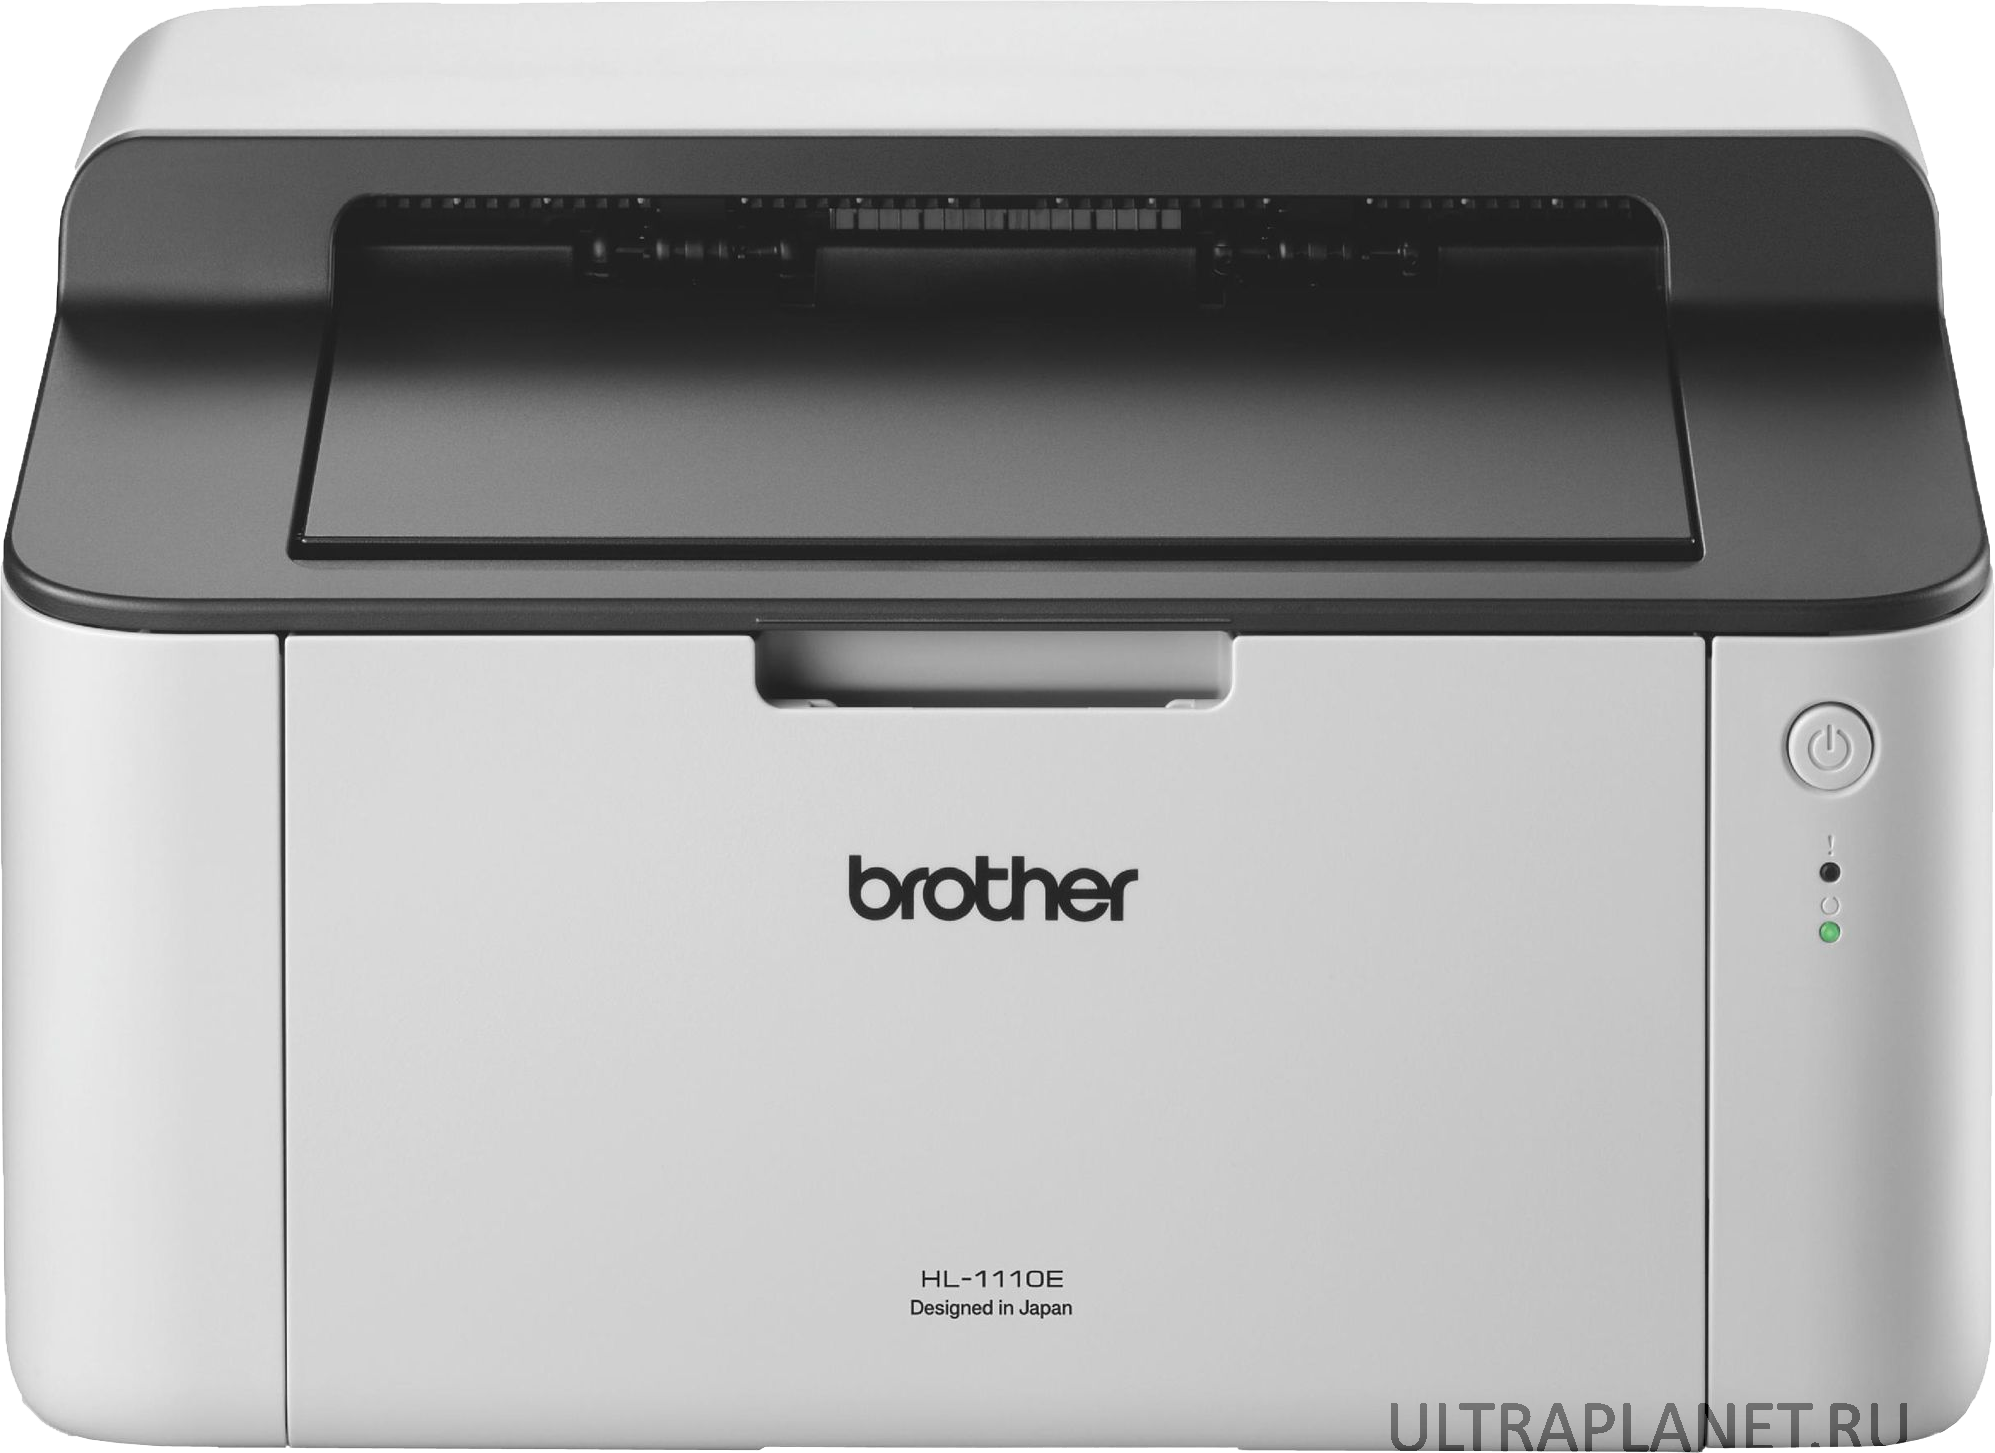 Модели лазерных принтеров. Принтер лазерный brother 1110r. Принтер Бразер hl 1110r. Принтер лазерный brother hl-1110r (hl1110r1). Принтер brother hl 1210w.